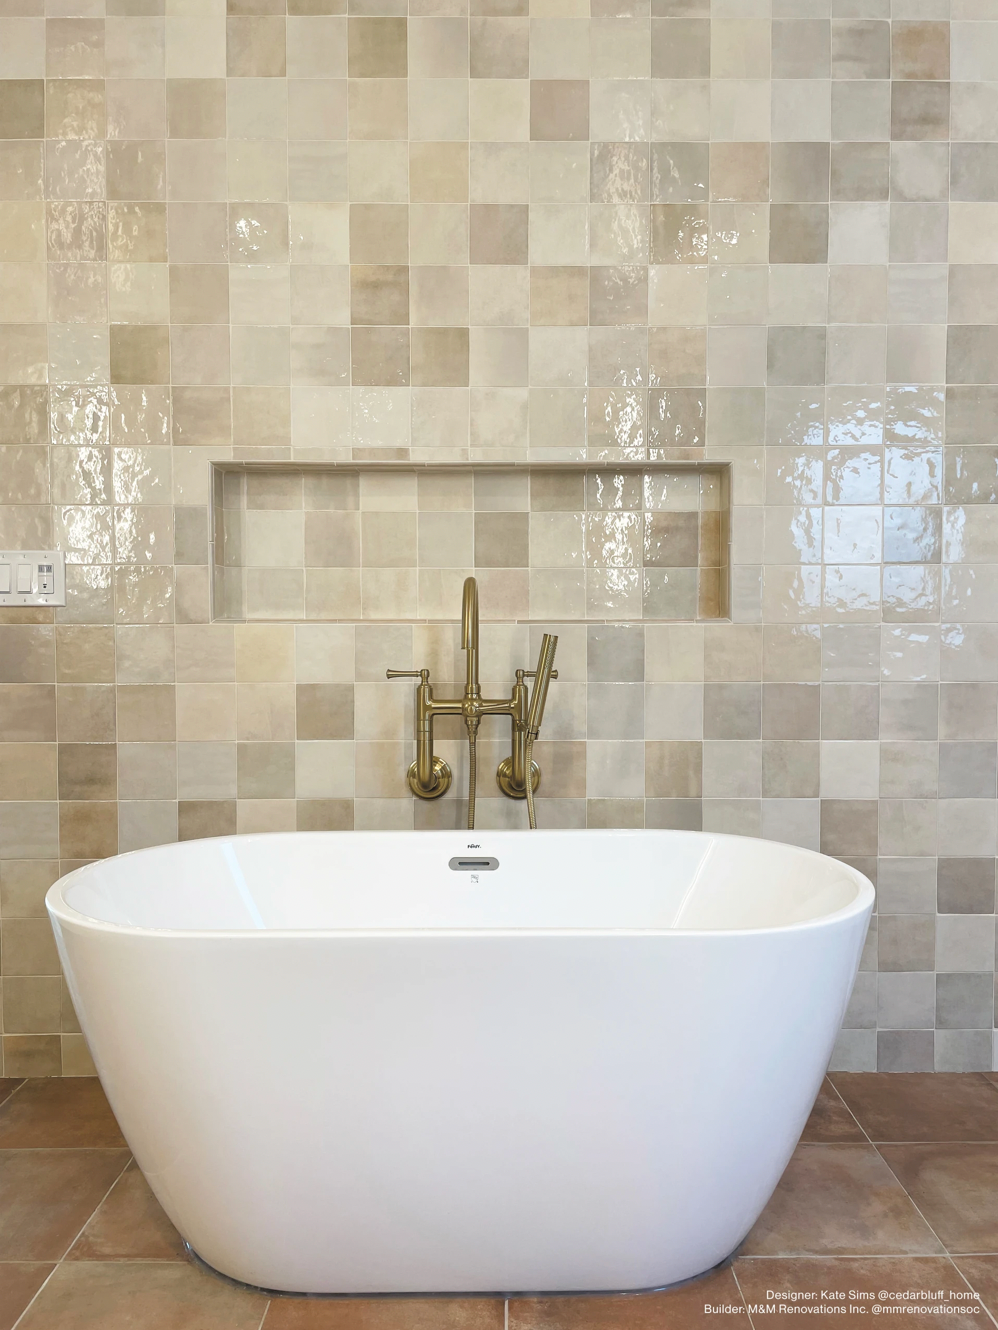 Cloe Ceramic Tile in Creme 5x5 bathroom